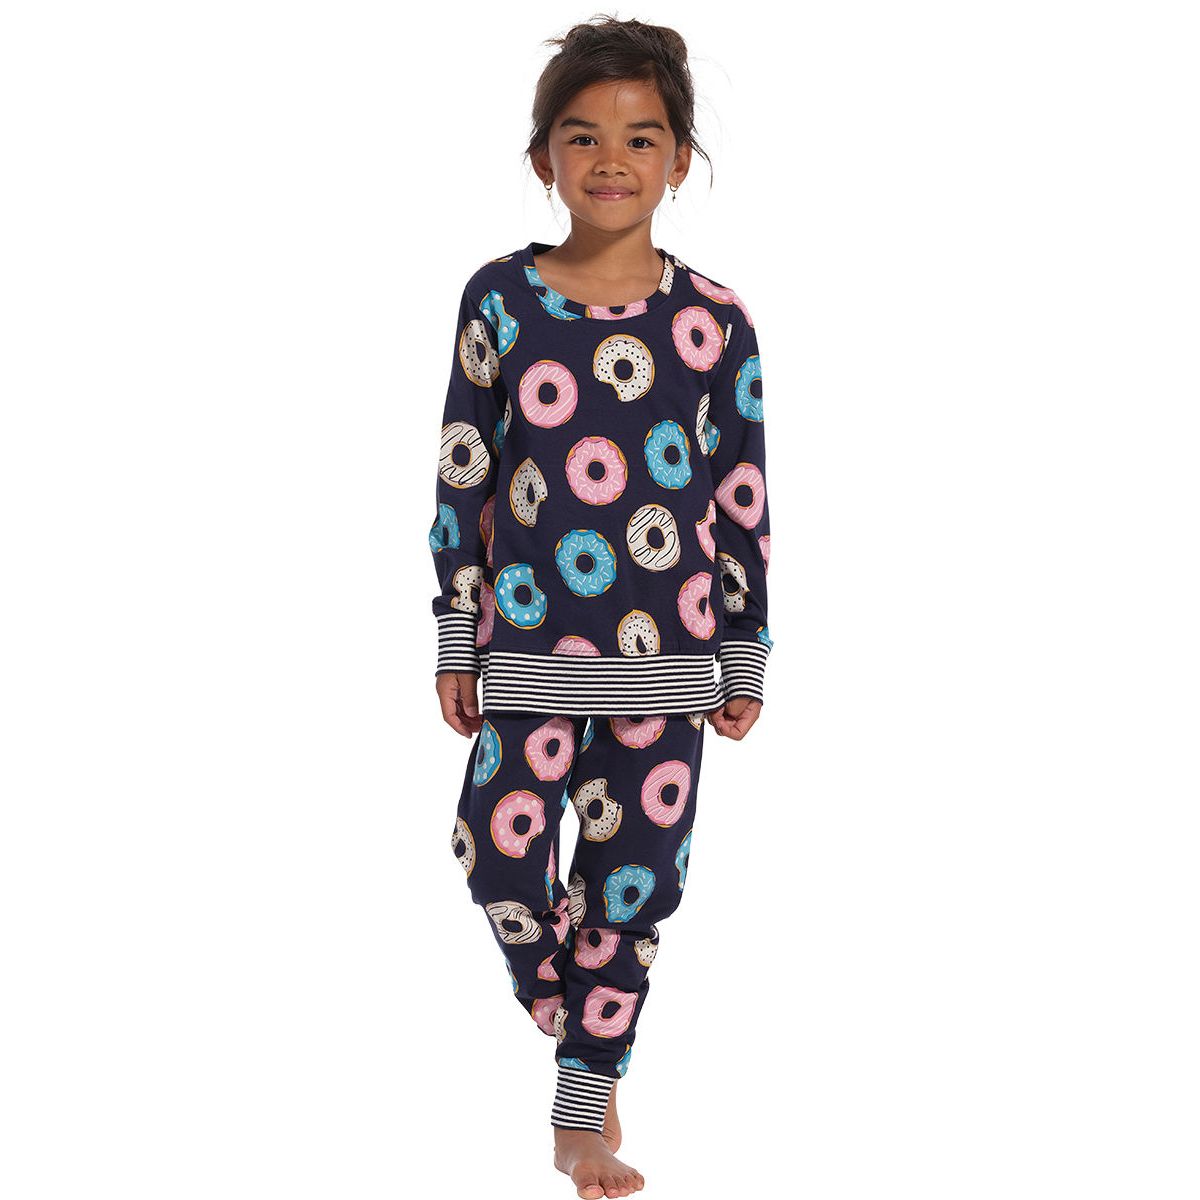 Onhandig Tijd Terugbetaling Meisjes pyjama Donuts Rebelle | Gratis verzending vanaf € 40,00 | Gratis  retour | Snel in huis | Online de mooiste pyjama's, nachthemden, ondermode  en meer